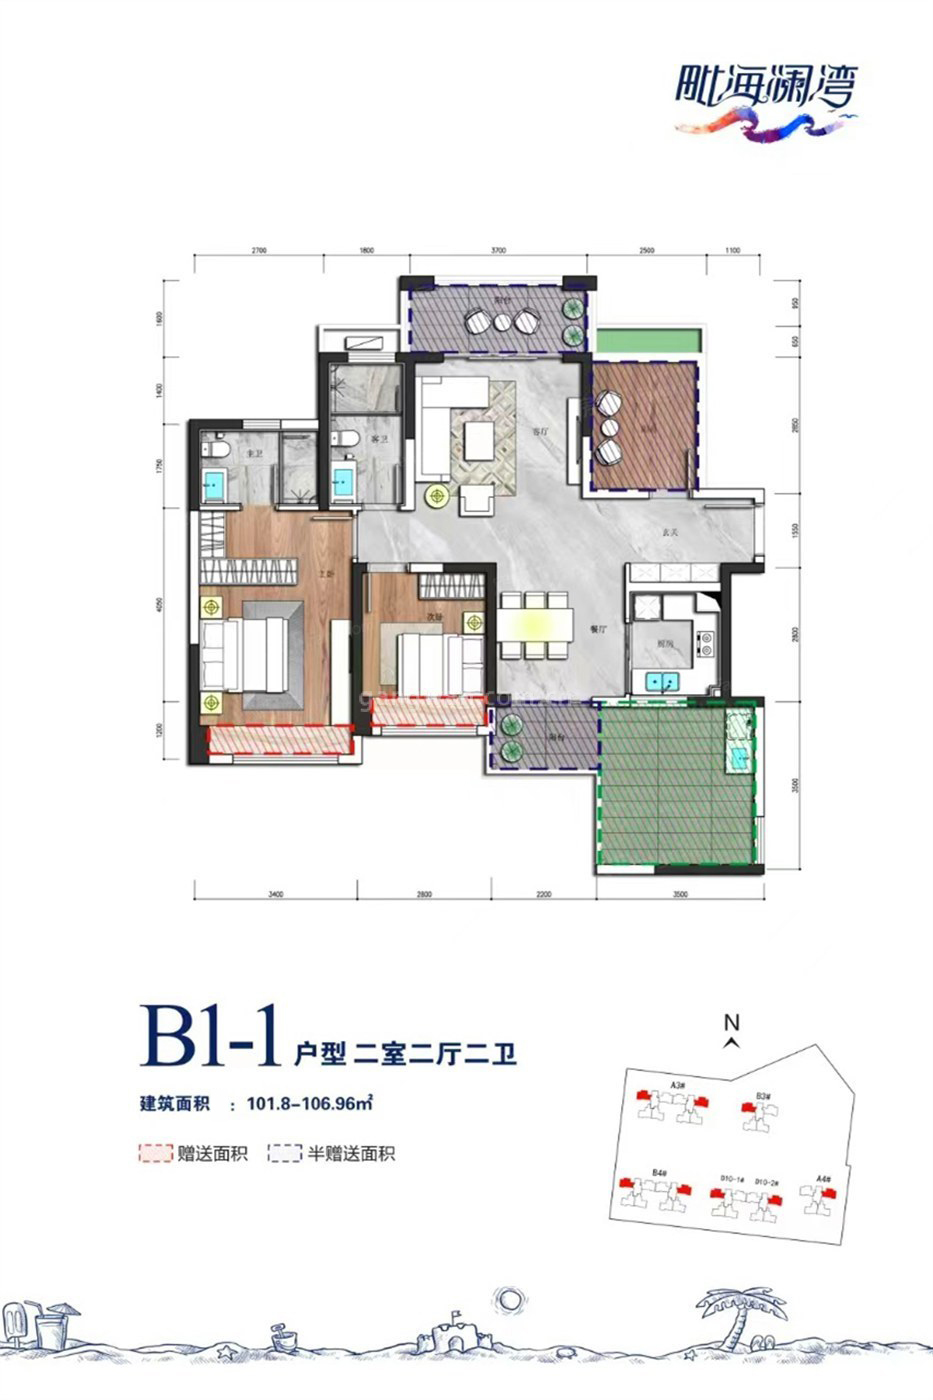 高层 B1-1户型 2室2厅2卫 建筑面积101.80-106.96㎡